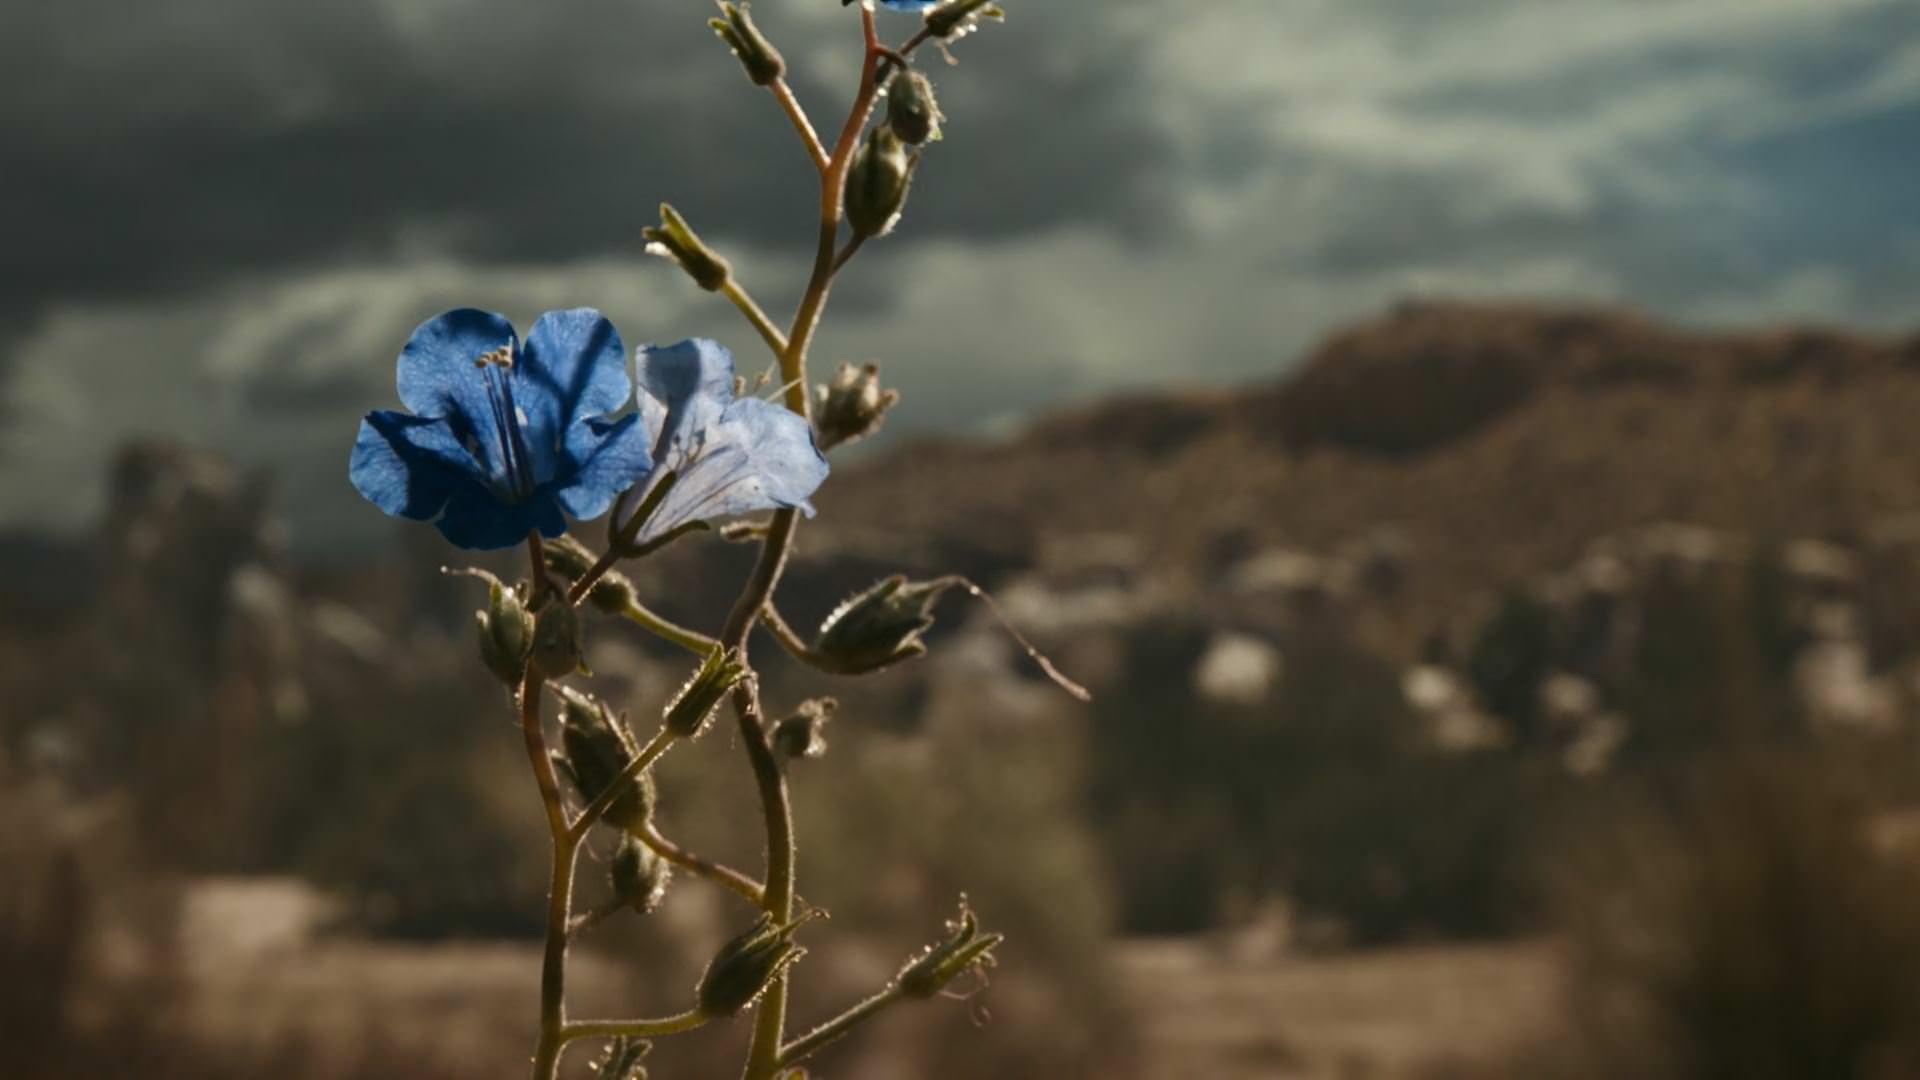 گل آبی در سکانس افتتاحیه اپیزود سوم سریال بتر کال سال